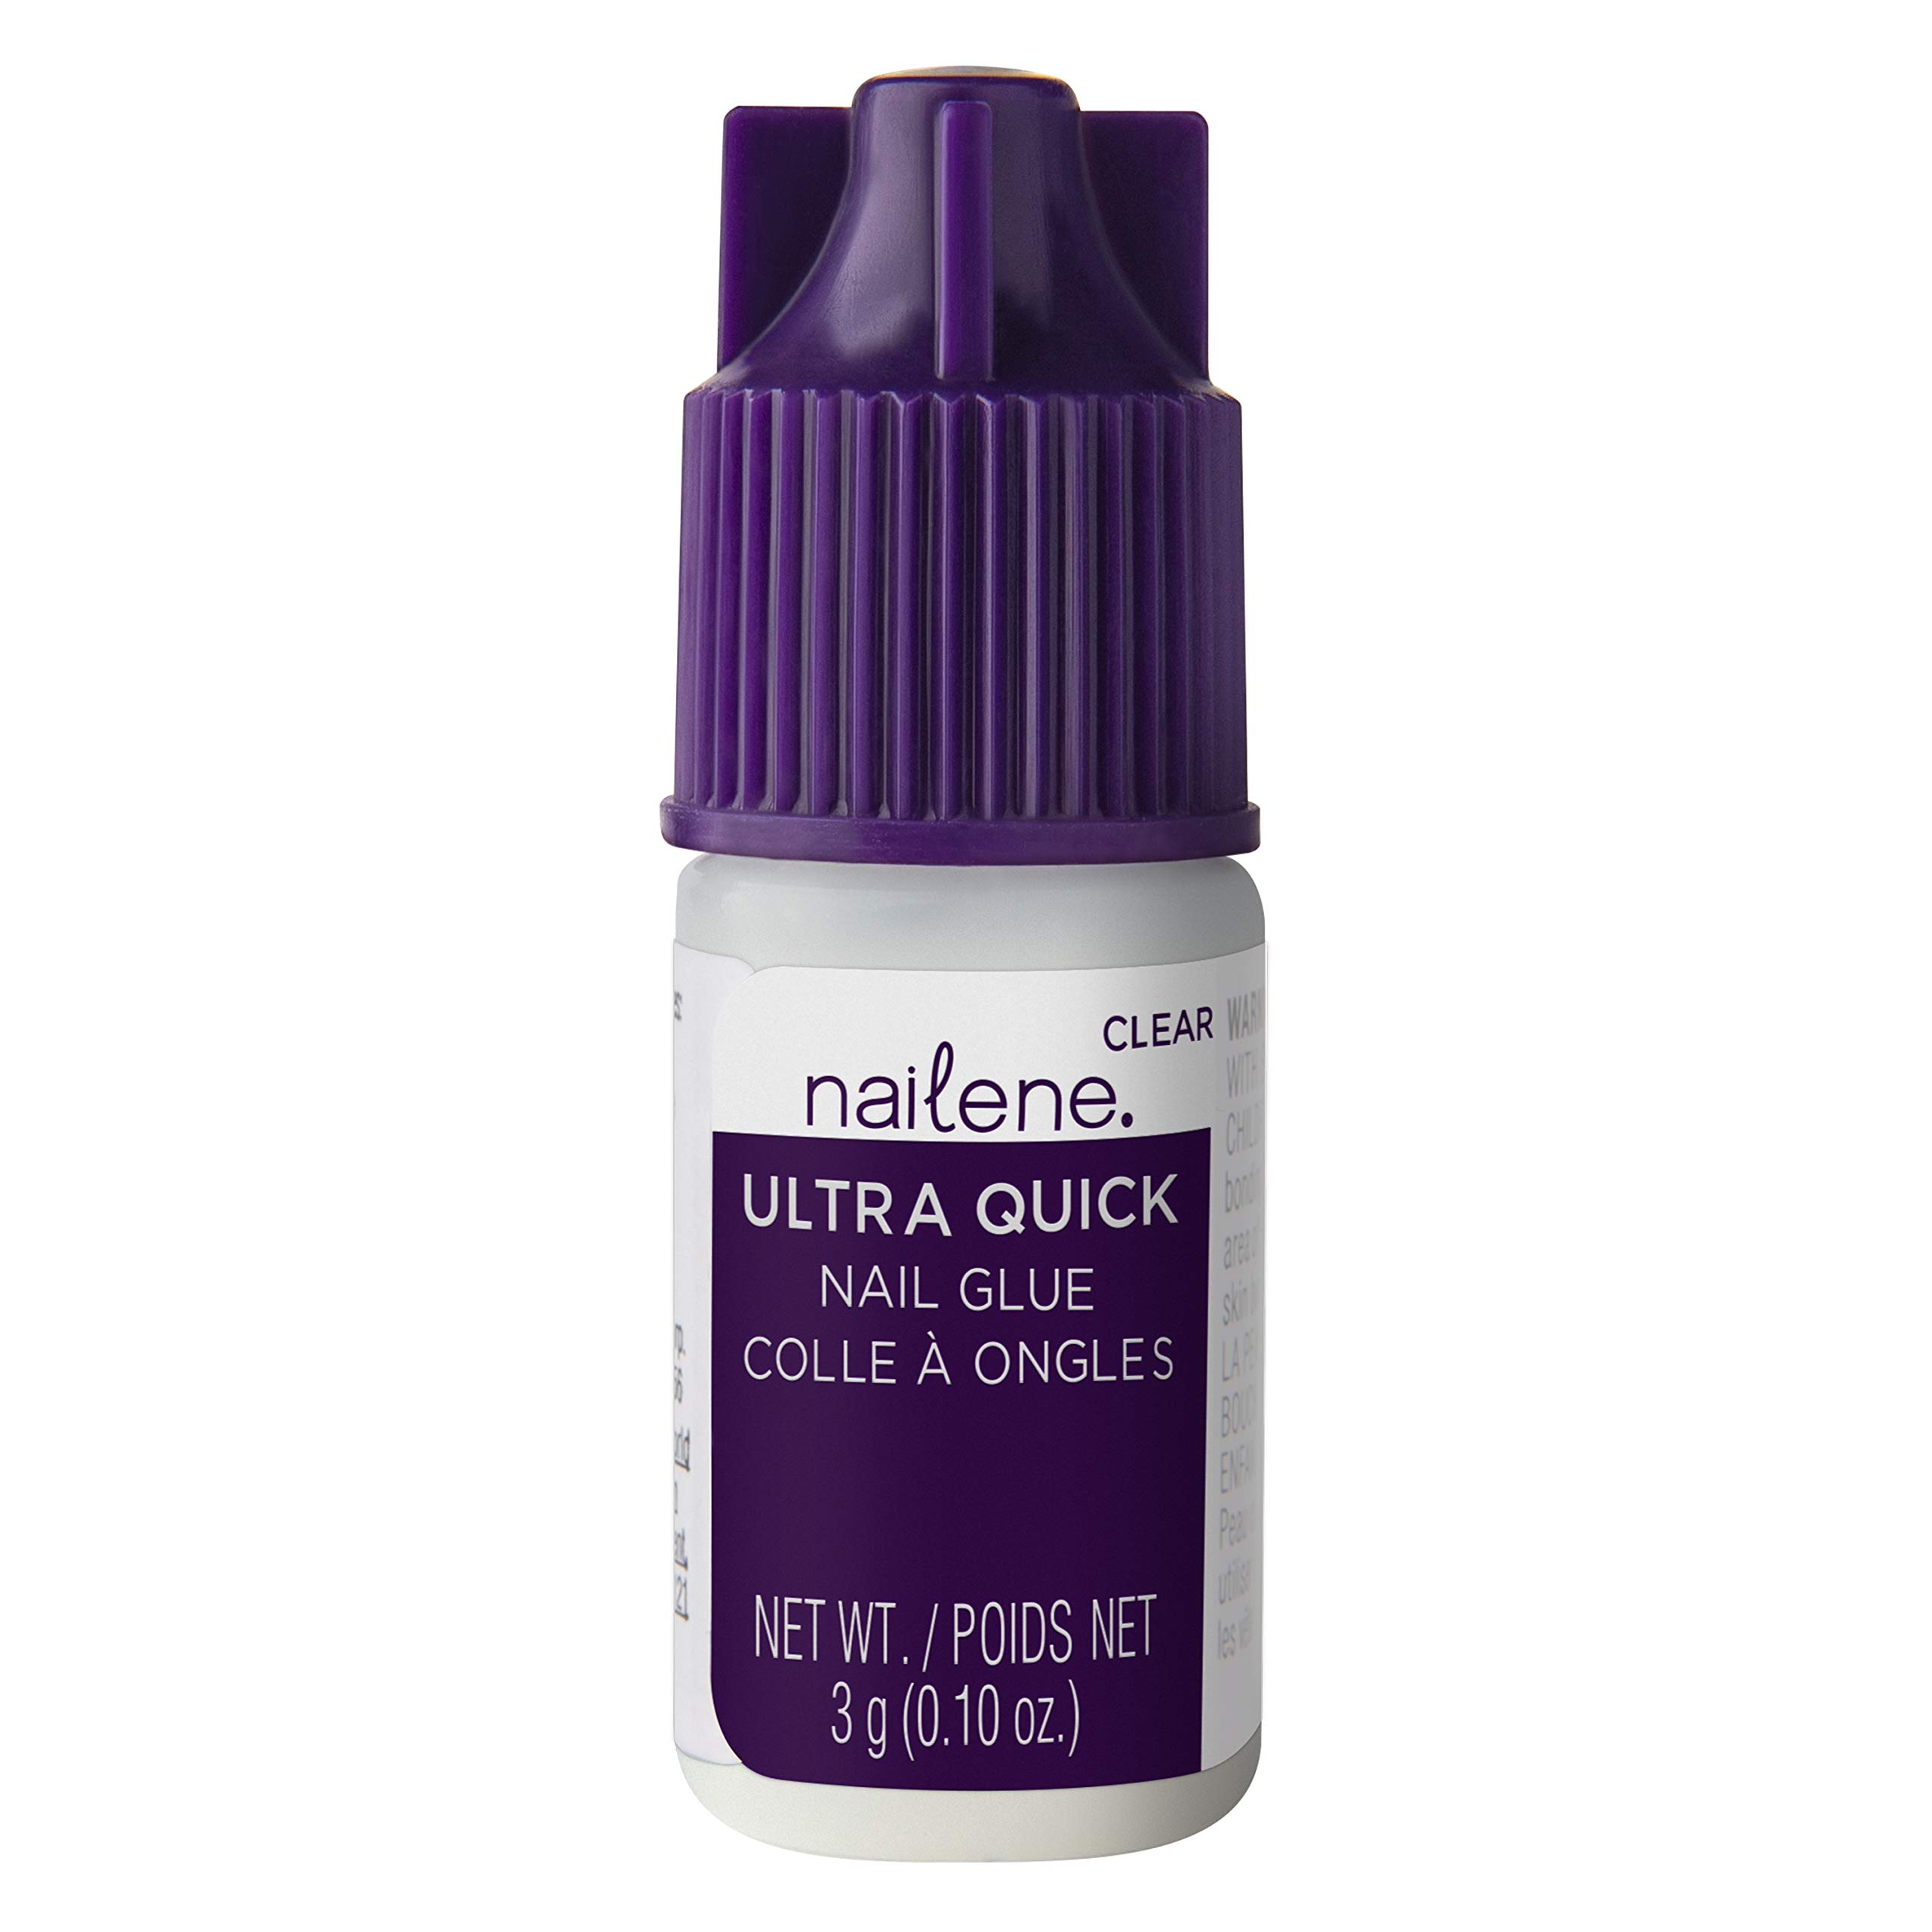 Nailene Ultra Quick Nail Glue, 0.10 oz – Durable, Easy to Apply False Nail Glue – Repairs Natural Nails – Quick-Drying Nail Adhesive Lasts Up to 7 Days, 3 Pack